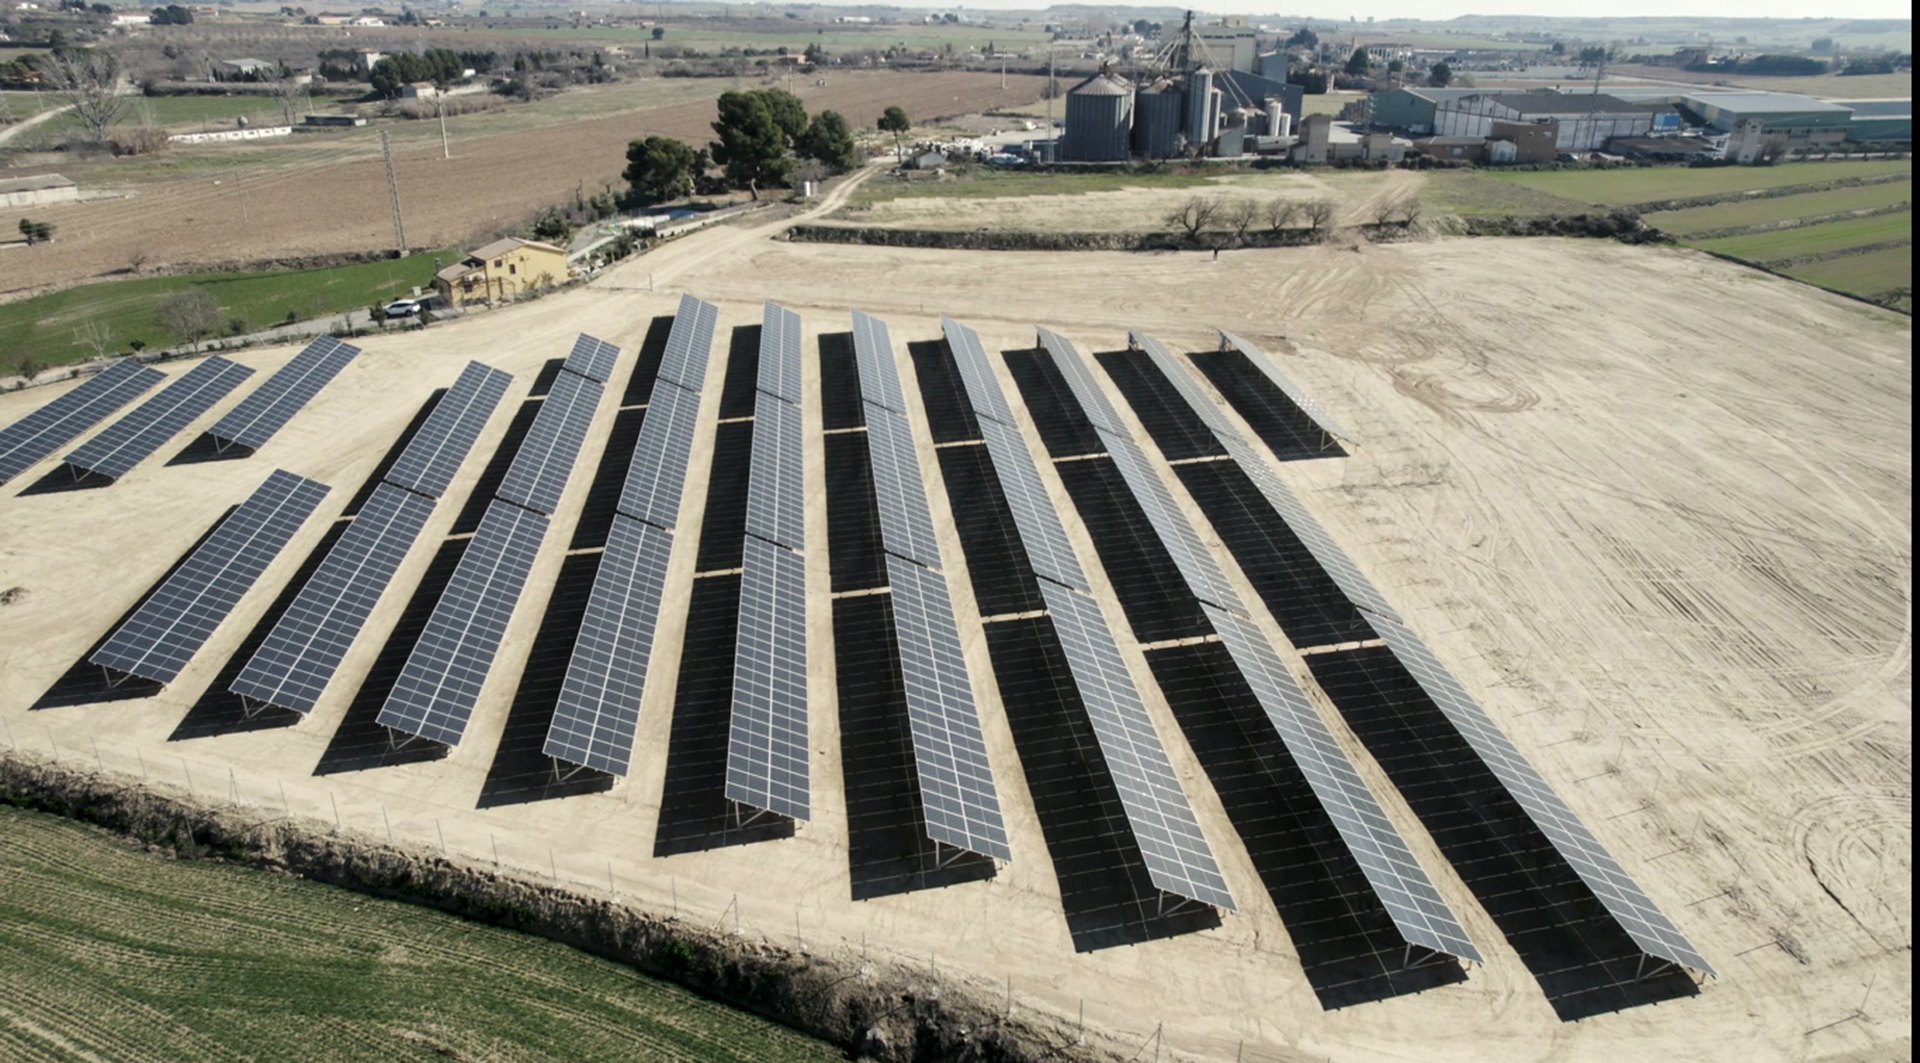 imatge aeria parc solar fotovoltaic